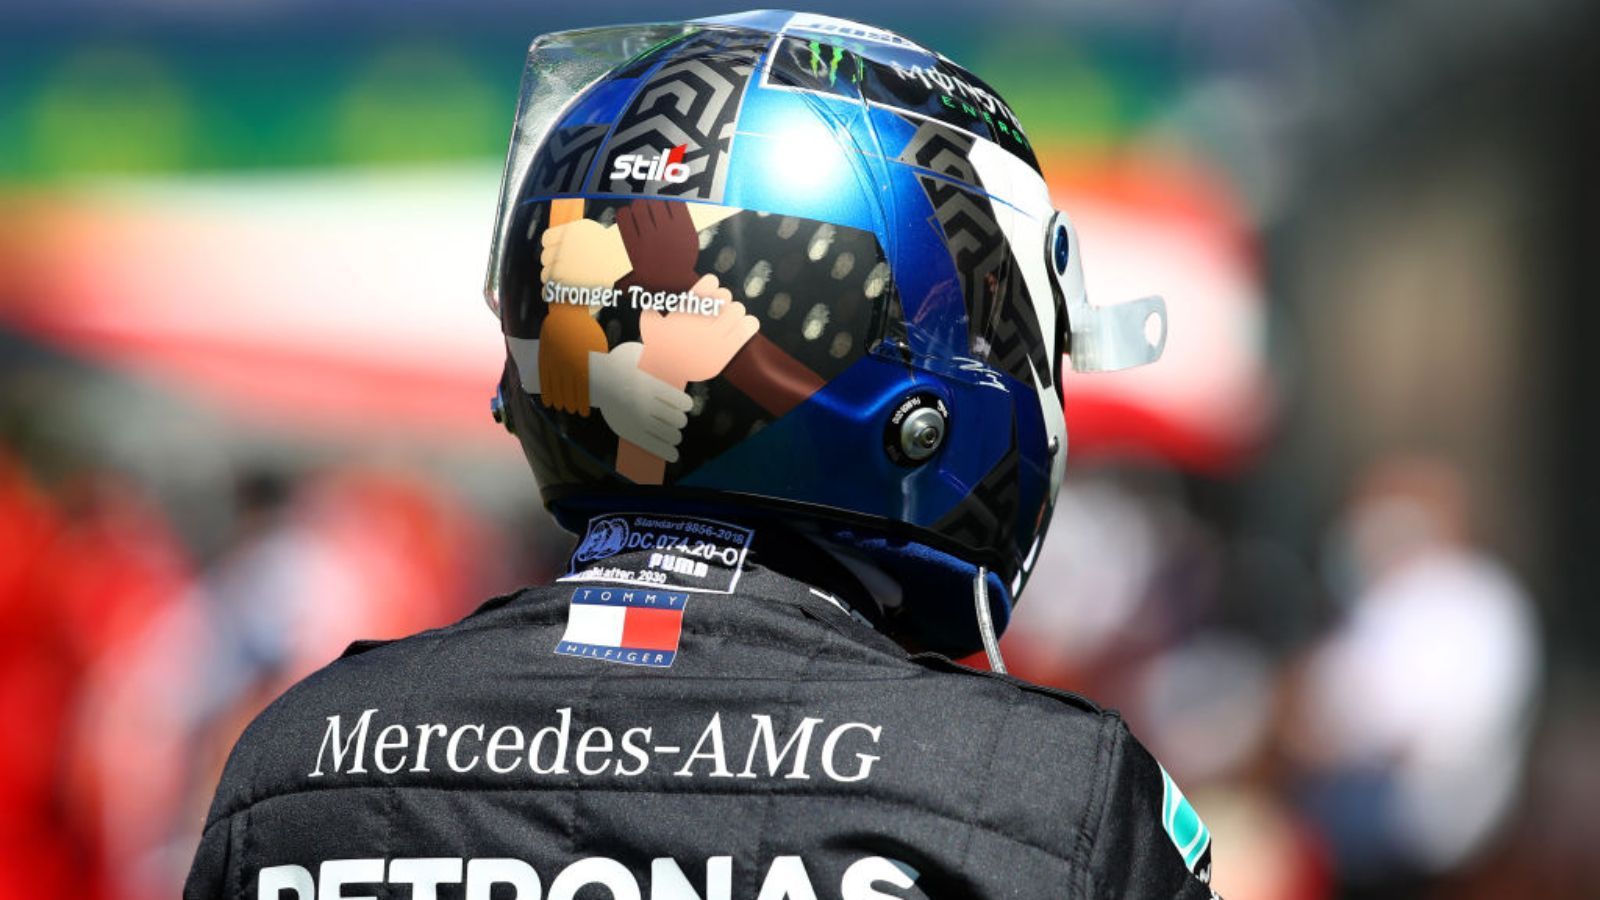 
                <strong>Das sind die Helmdesigns der Formel 1-Fahrer zur Saison 2021</strong><br>
                Während die Formel-1-Teams nach und nach die Designs ihrer Autos vorstellen, sind auch die 20 Fahrer nicht untätig, was ihre "Außendarstellung" angeht. ran.de zeigt die Helmdesigns der Fahrer aus der Königsklasse des Motorsports.
              